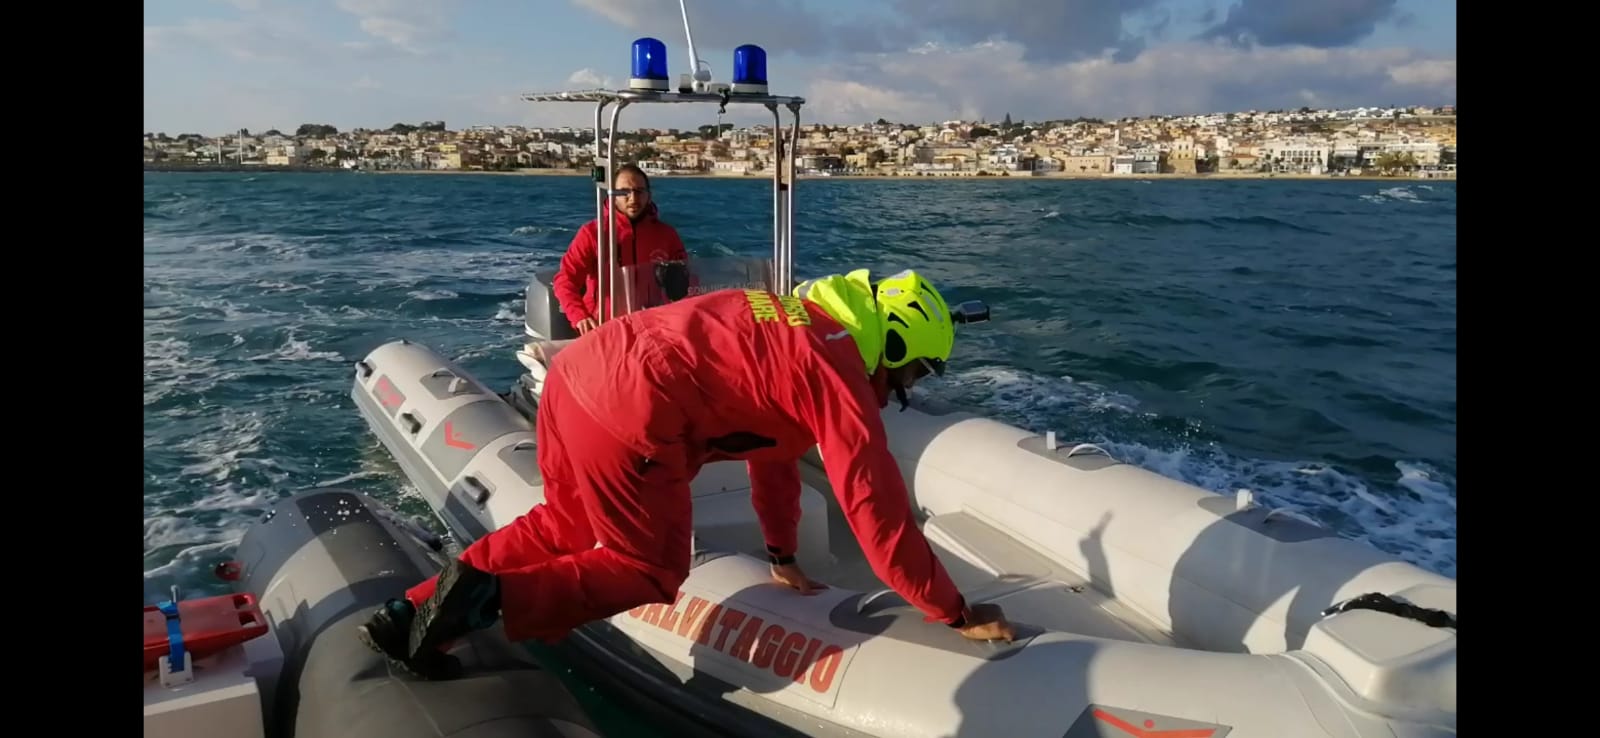 Doppio intervento nelle acque di Ragusa, il Presidio Marina salva una giovane surfista e libera una imbarcazione